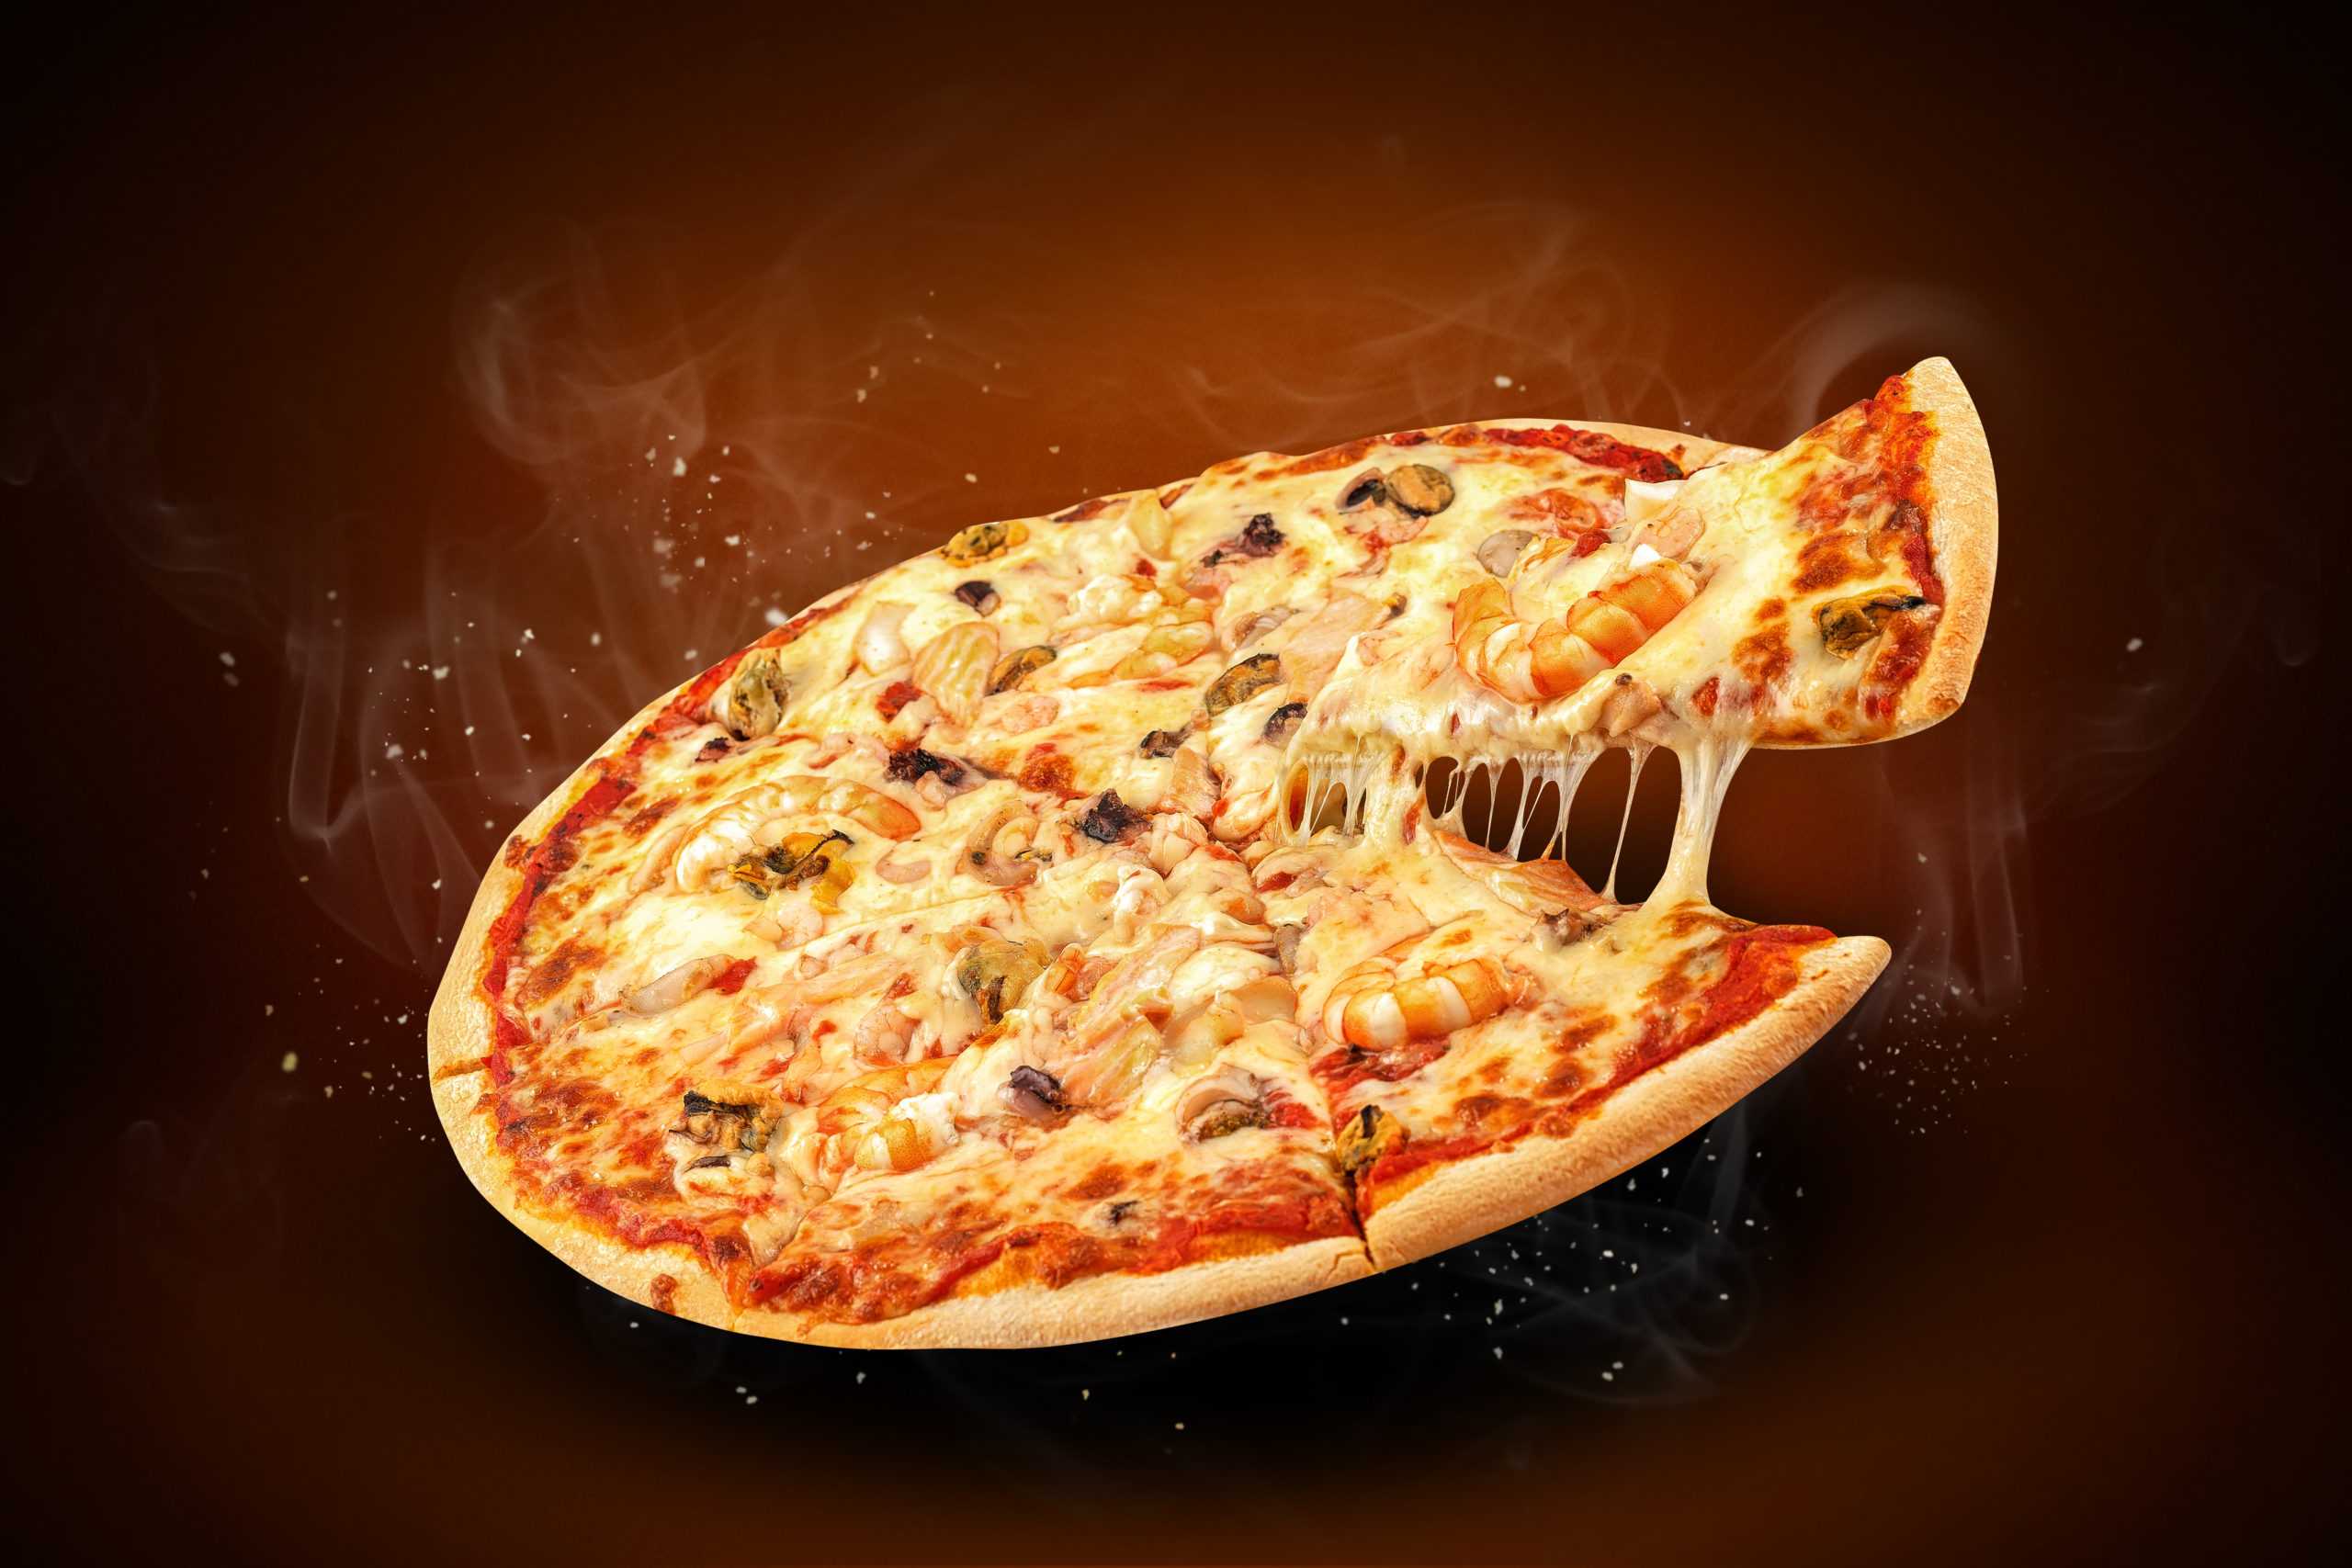 эй наконец то я могу попробовать пиццу путтанеска с соусом песто отличная пицца фото 82